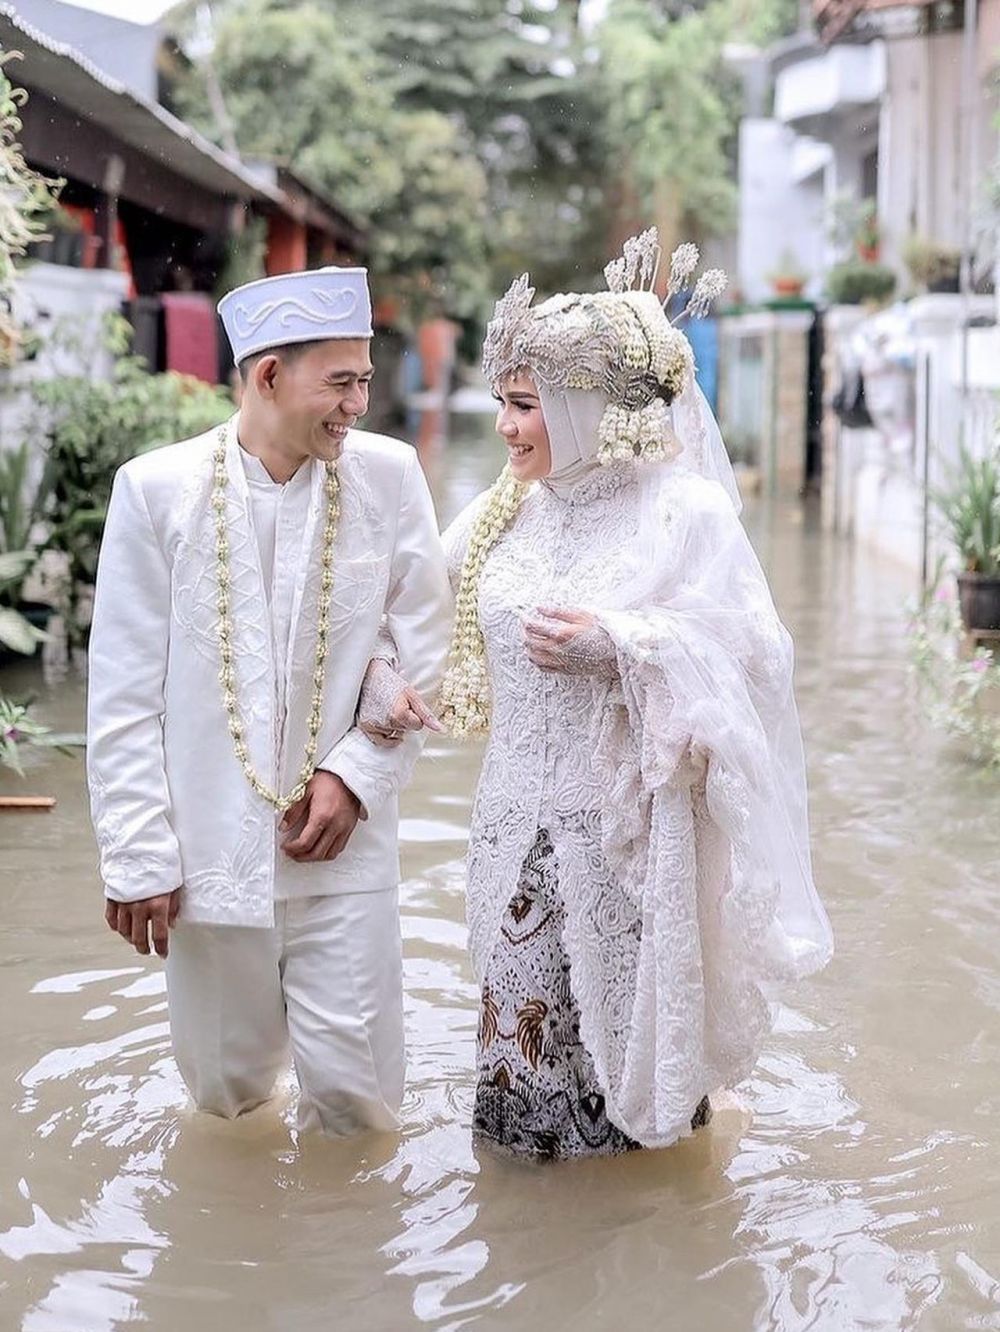 Viral kisah pasangan tetap gelar pernikahan di tengah banjir